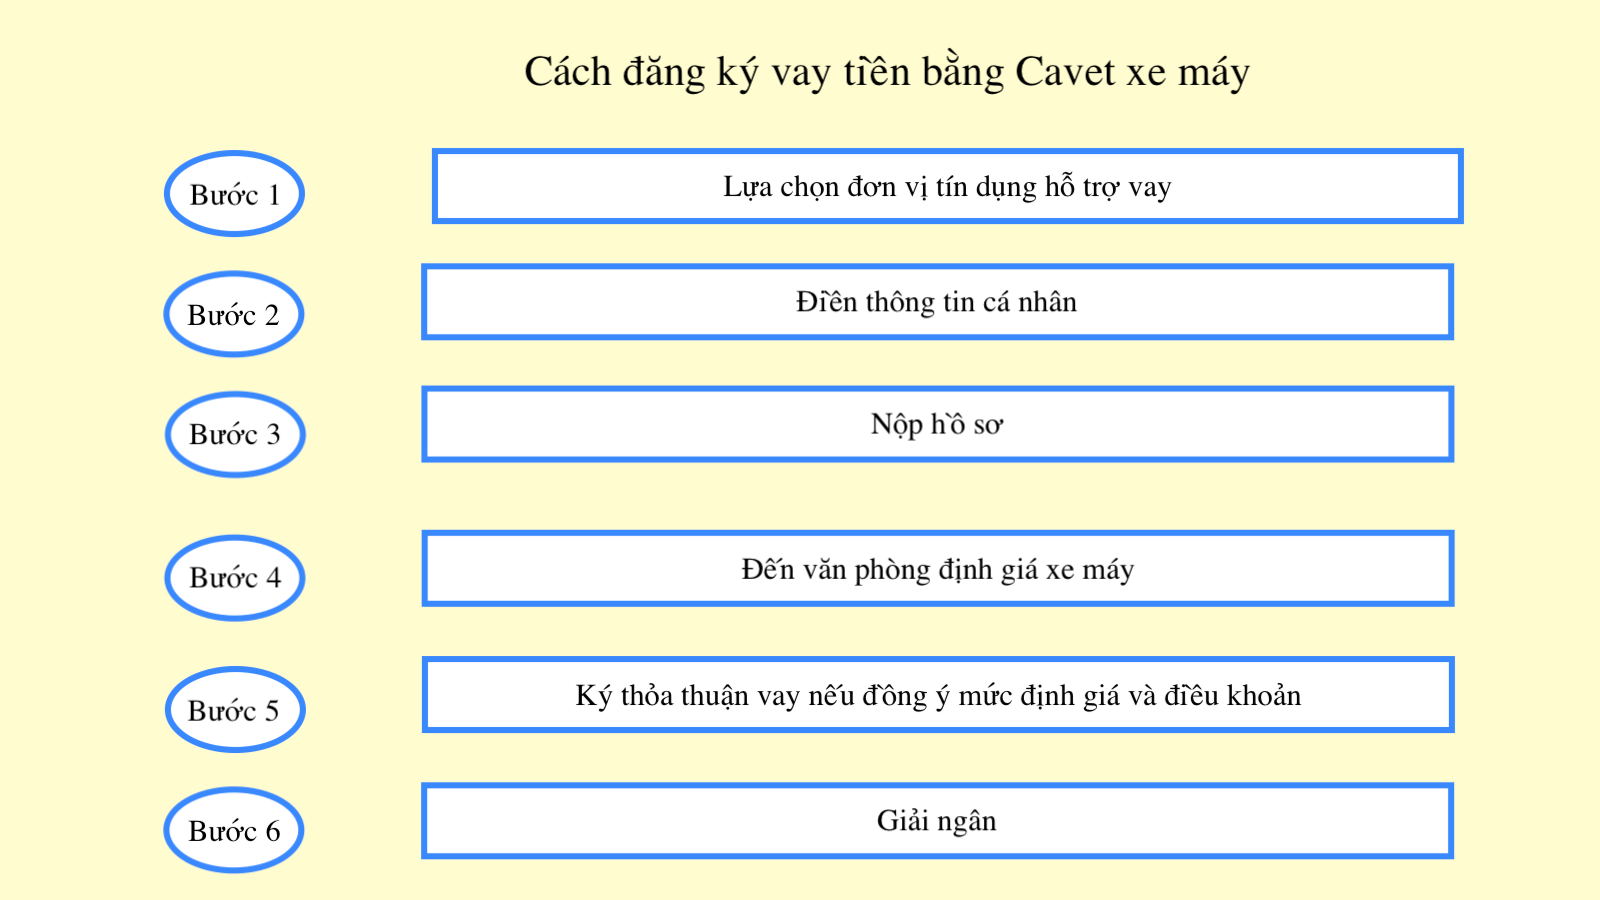 cach-dang-ky-vay-tien-bang-cavet-xe-may